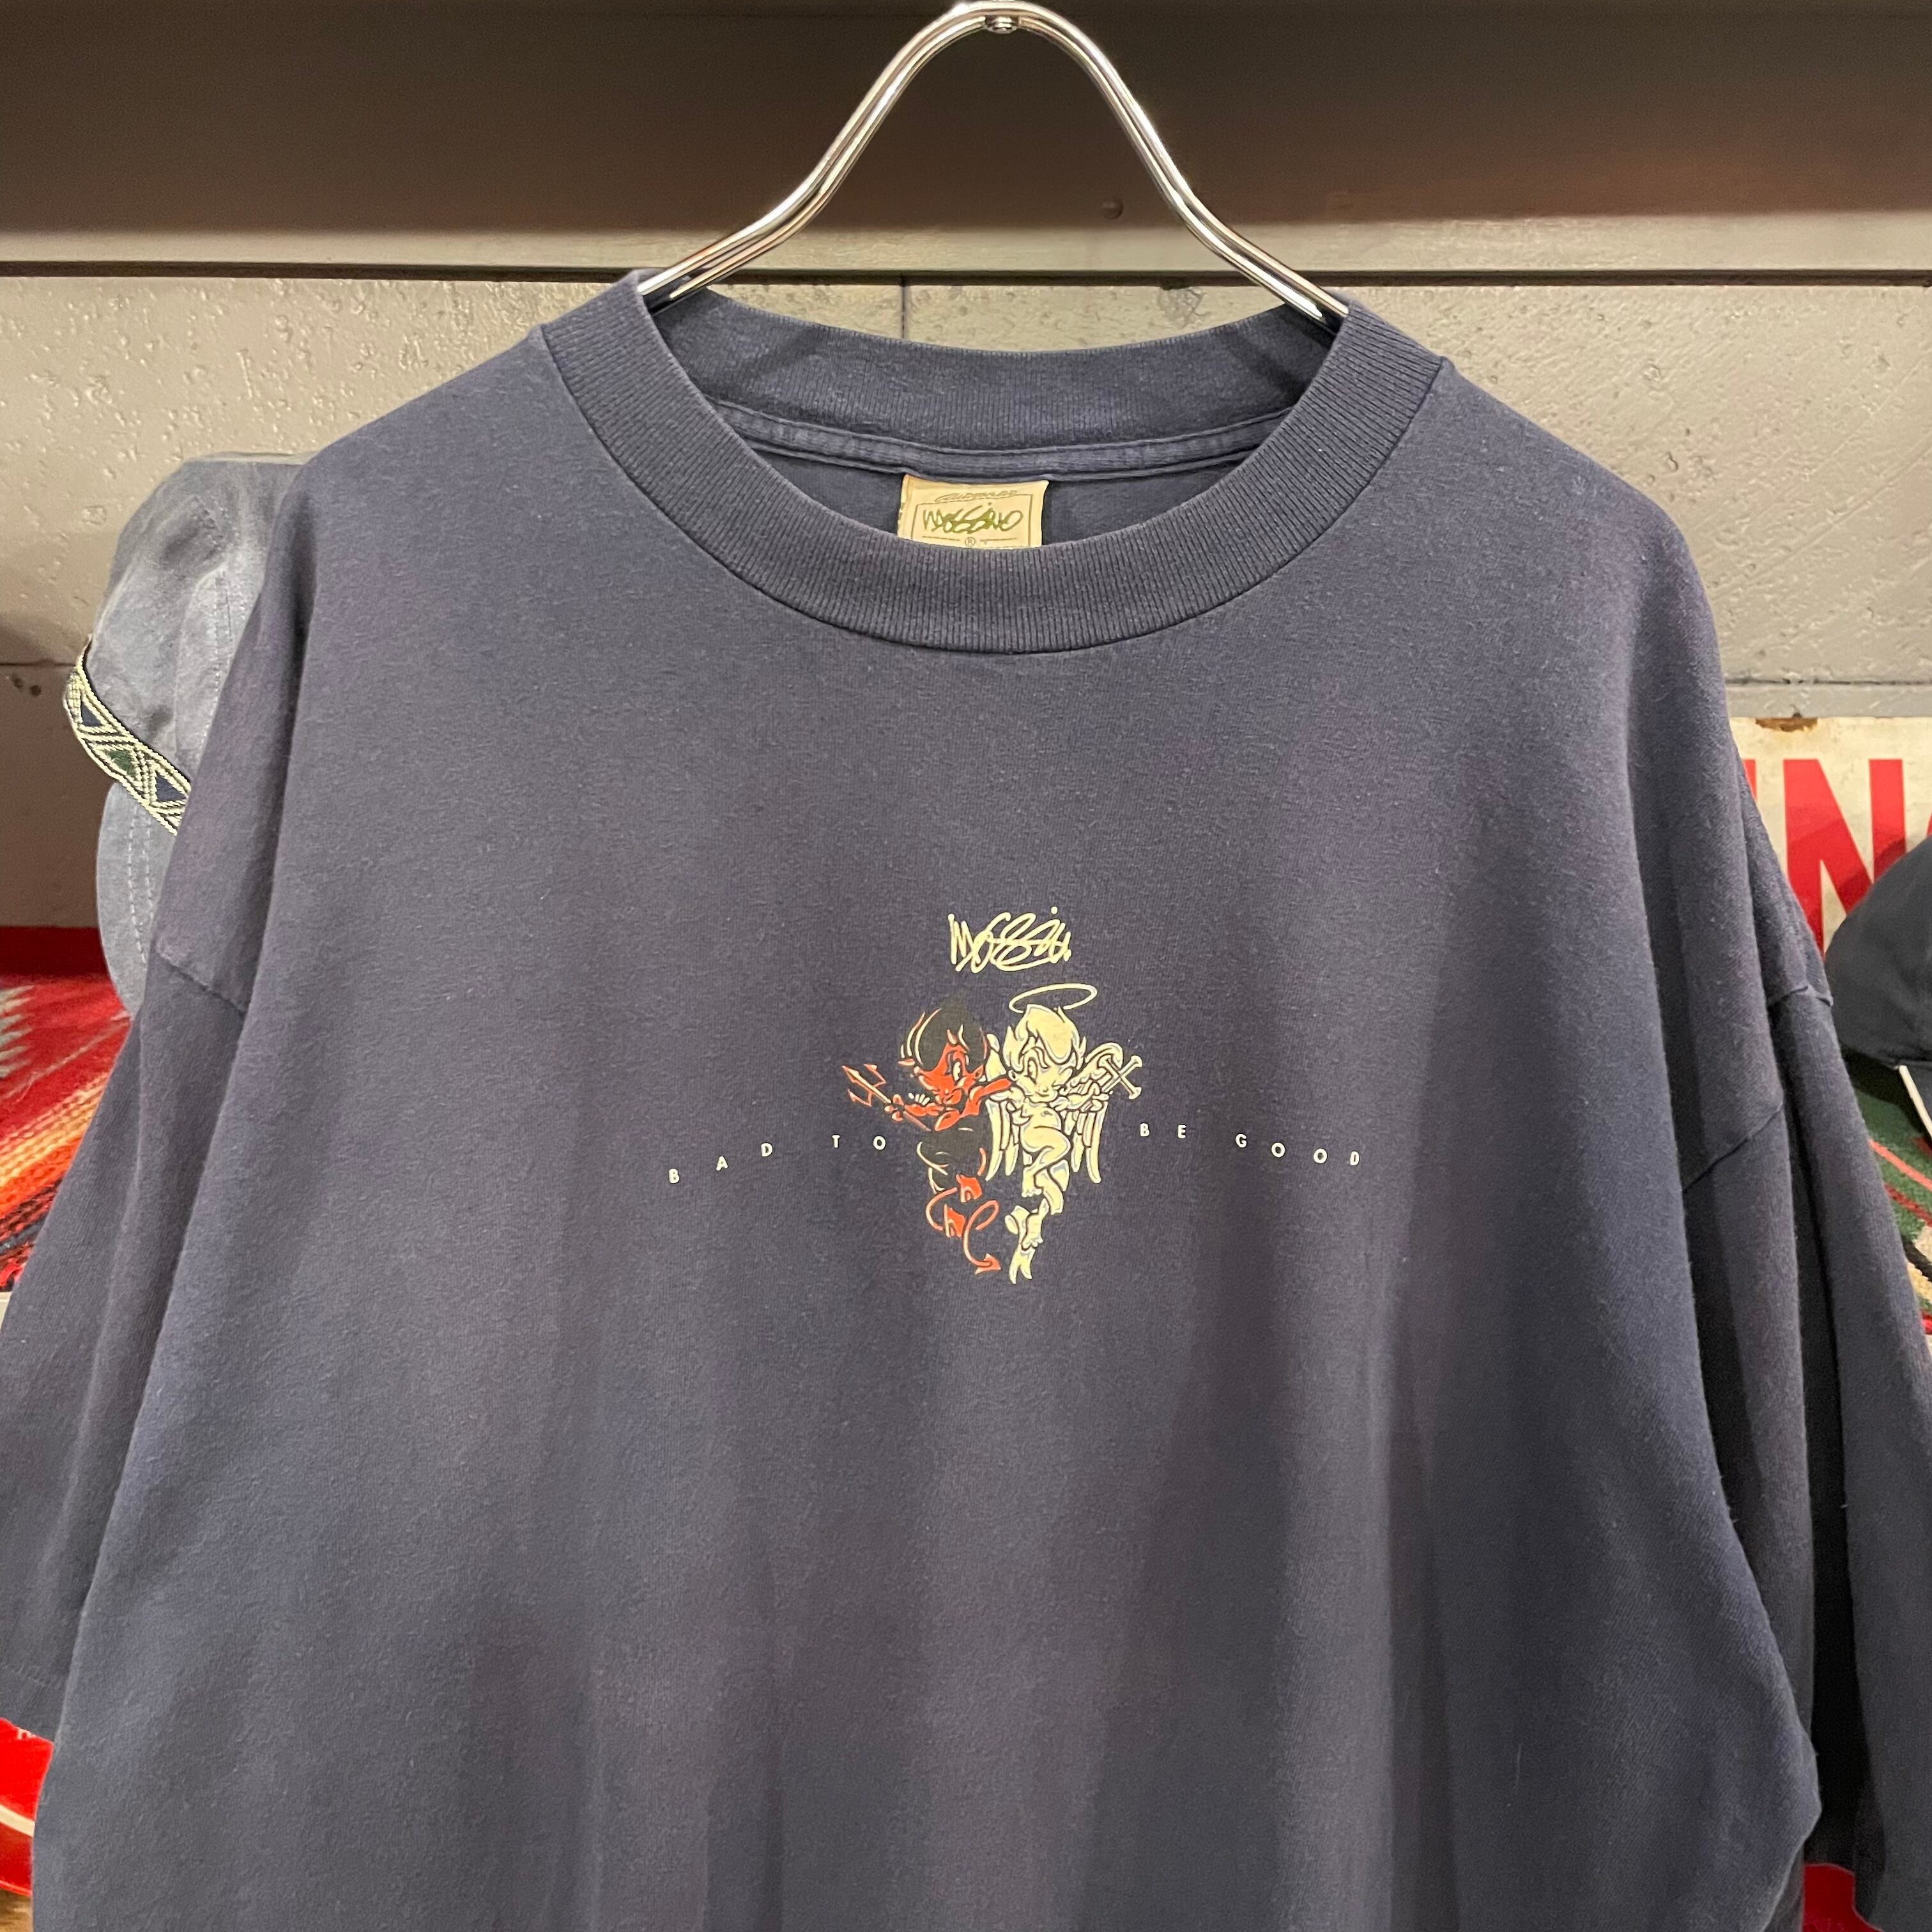 mossimo 90s 両面キャラクタープリント　ビッグサイズ　Tシャツ